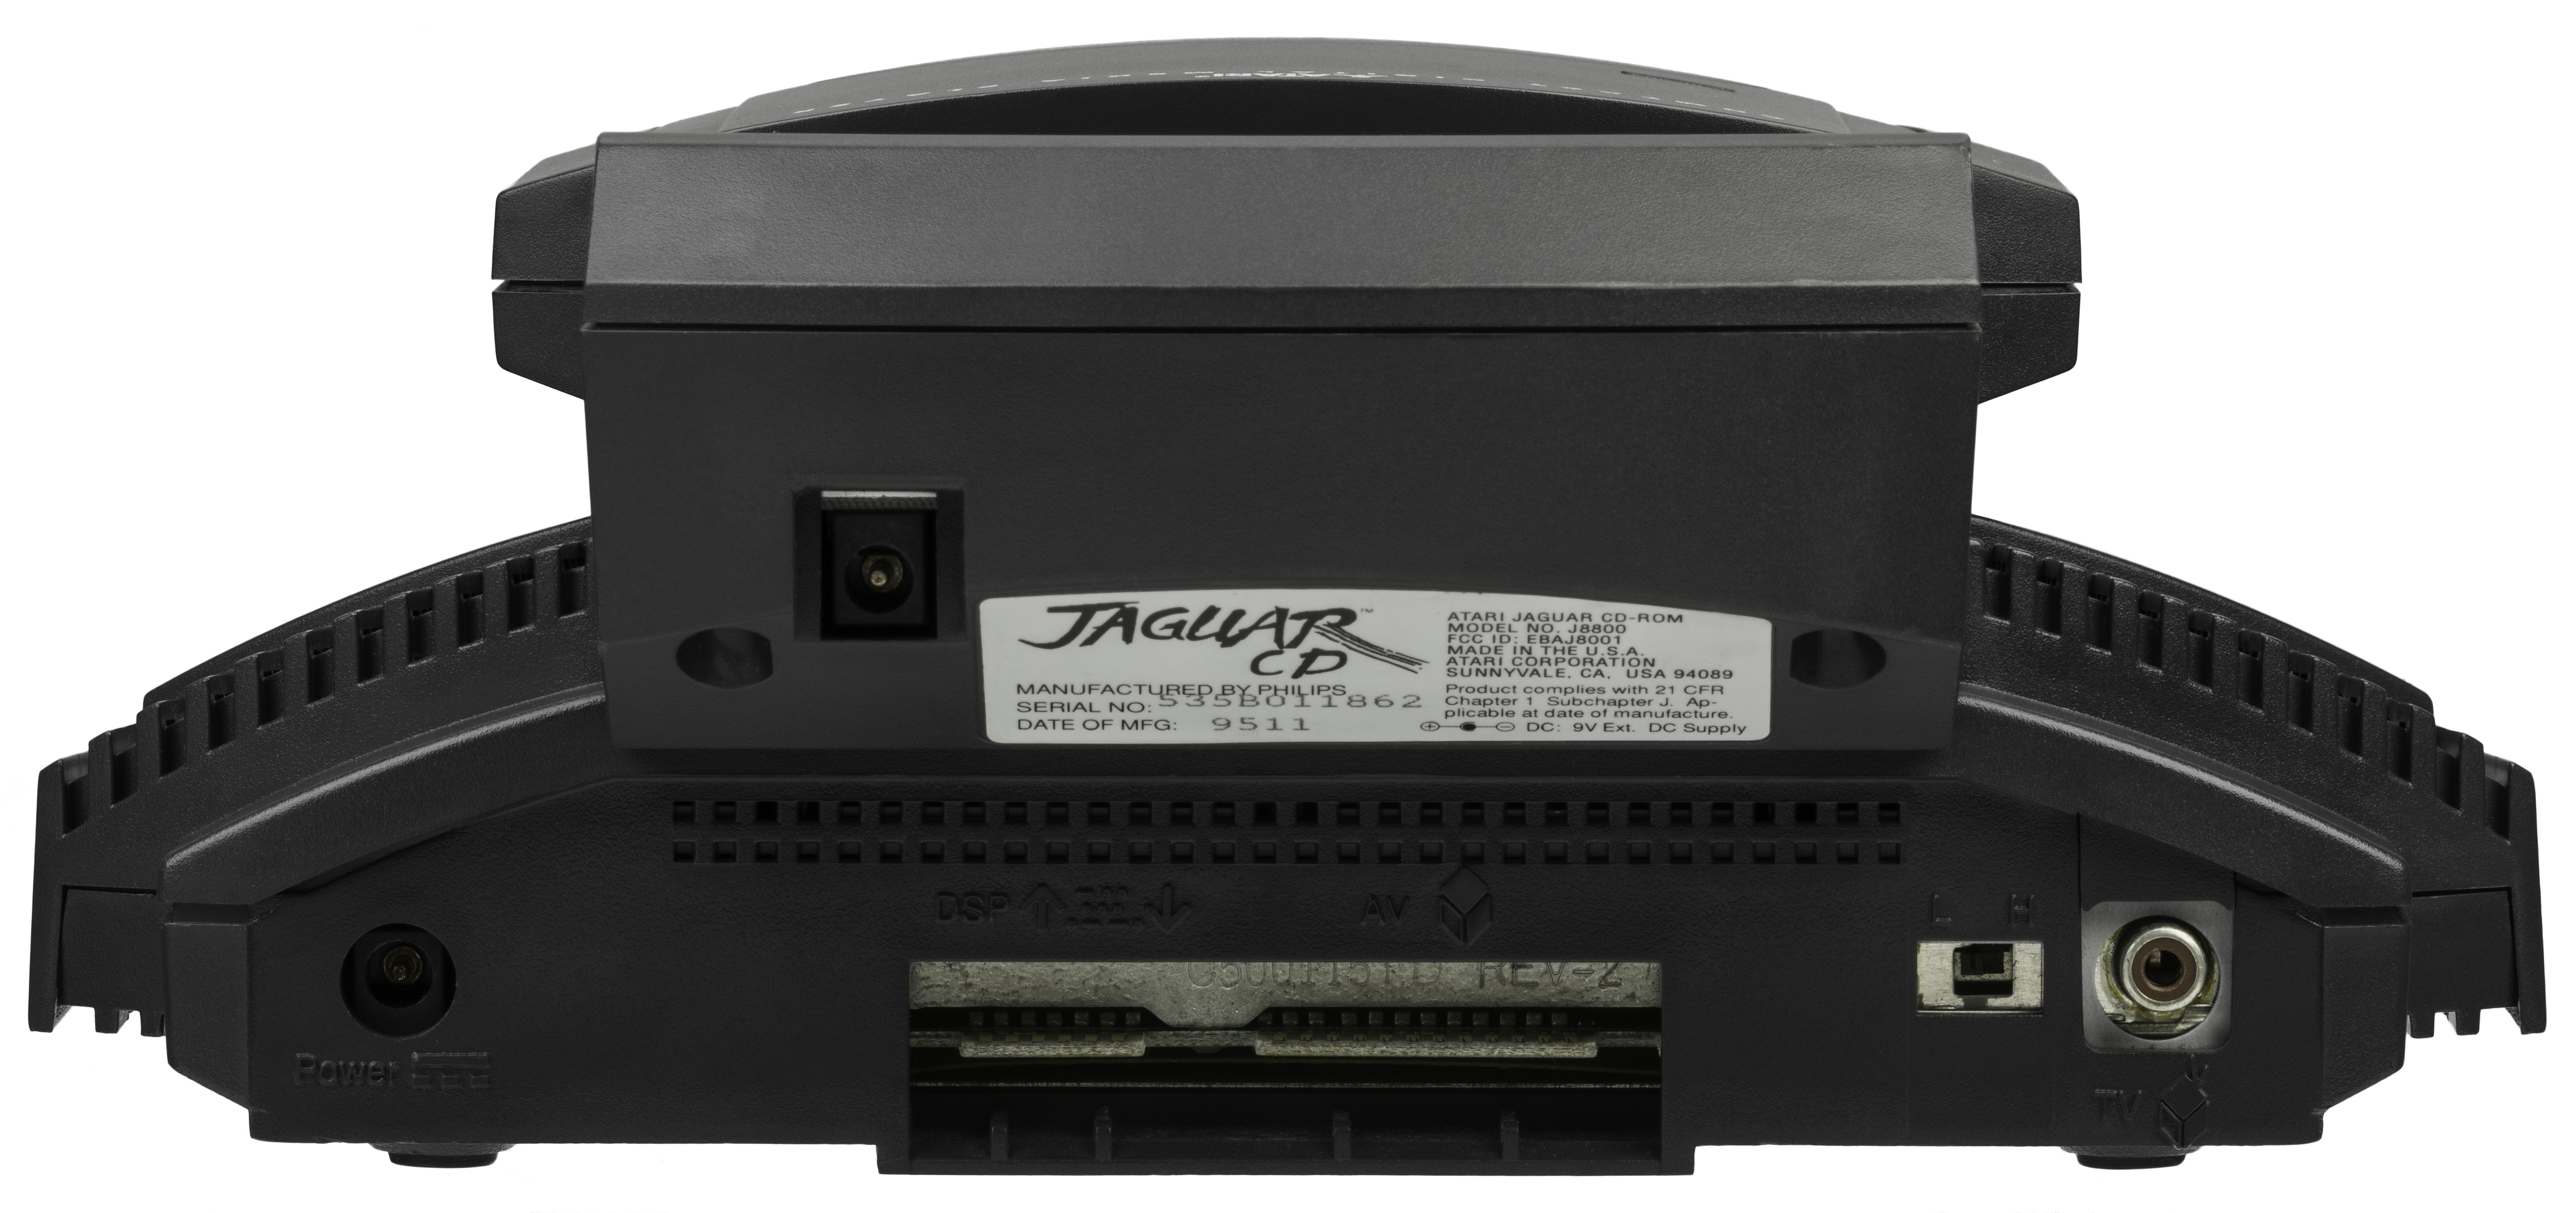 Atari jaguar. Атари Jaguar. Atari Jaguar CD. Игры на Atari Jaguar CD. Atari Jaguar Duo.